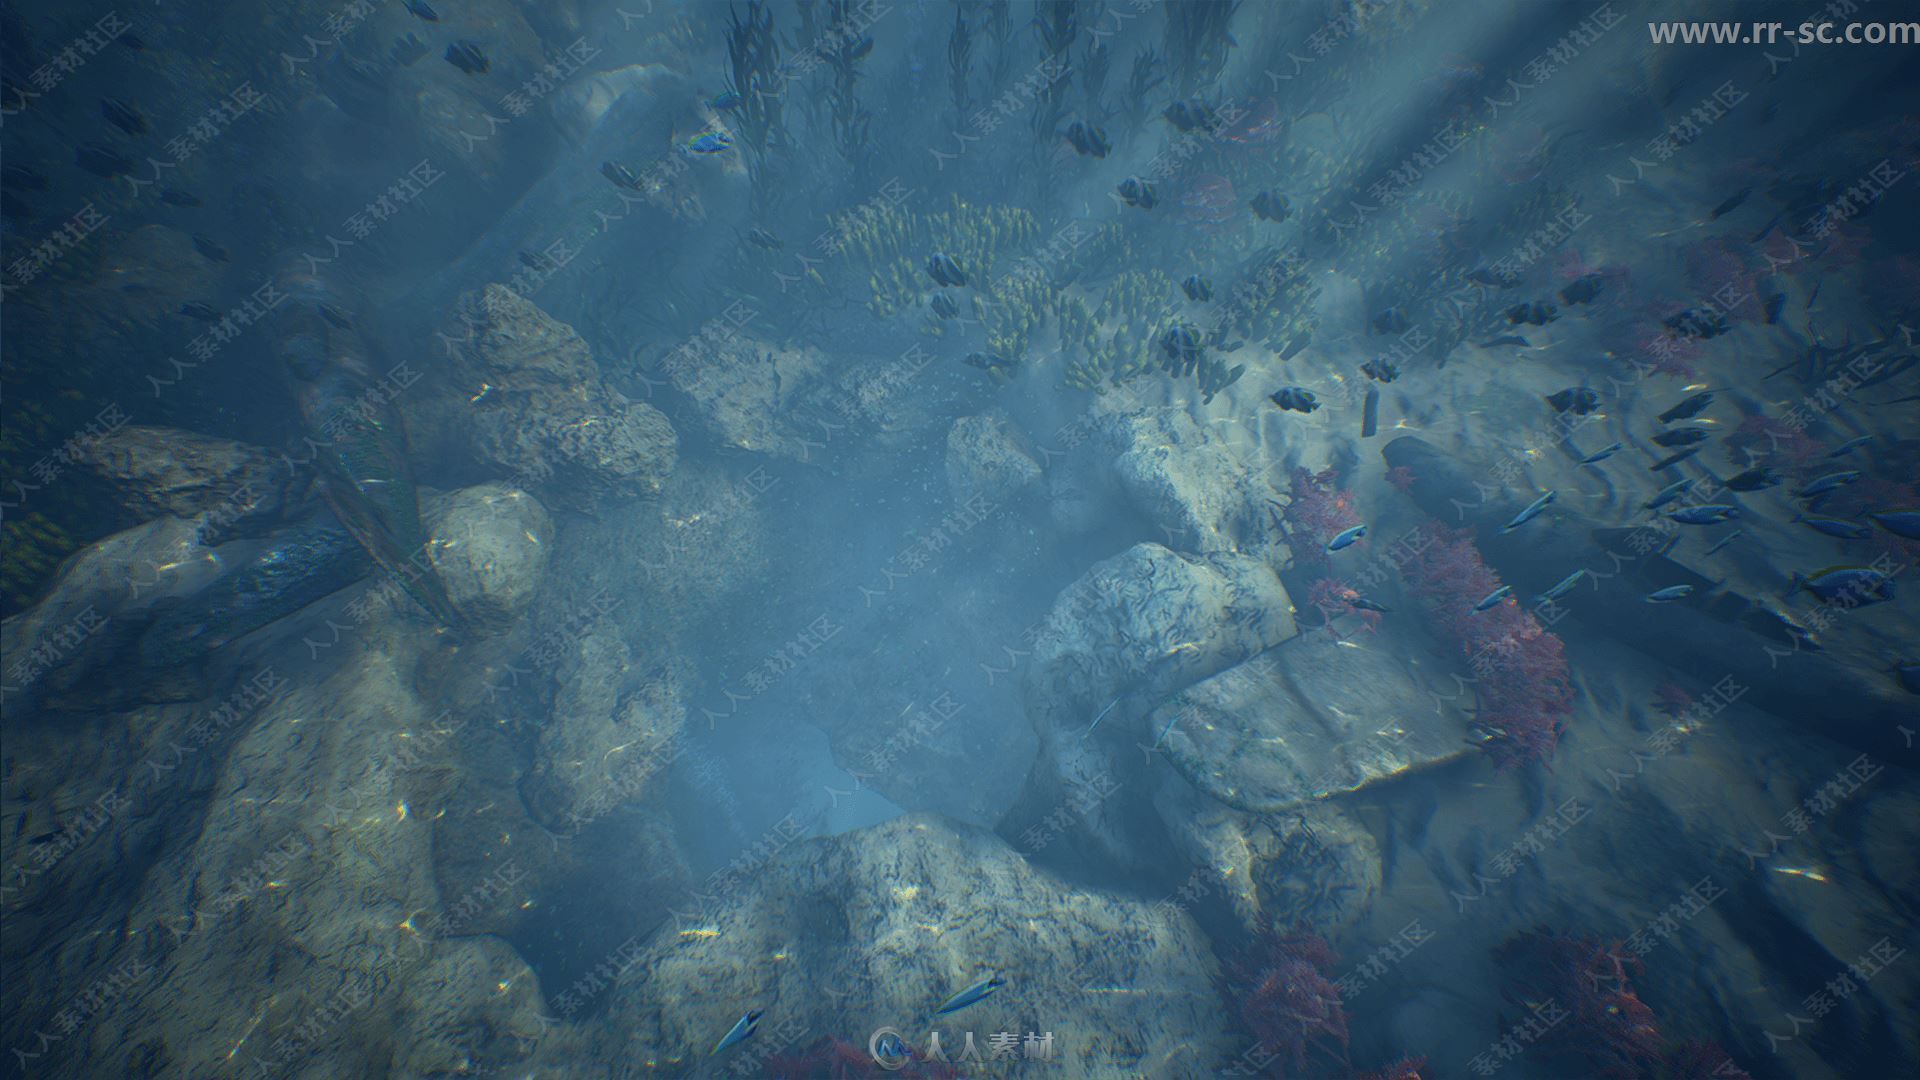 海底岩石植物动物环境渲染UE4游戏素材资源